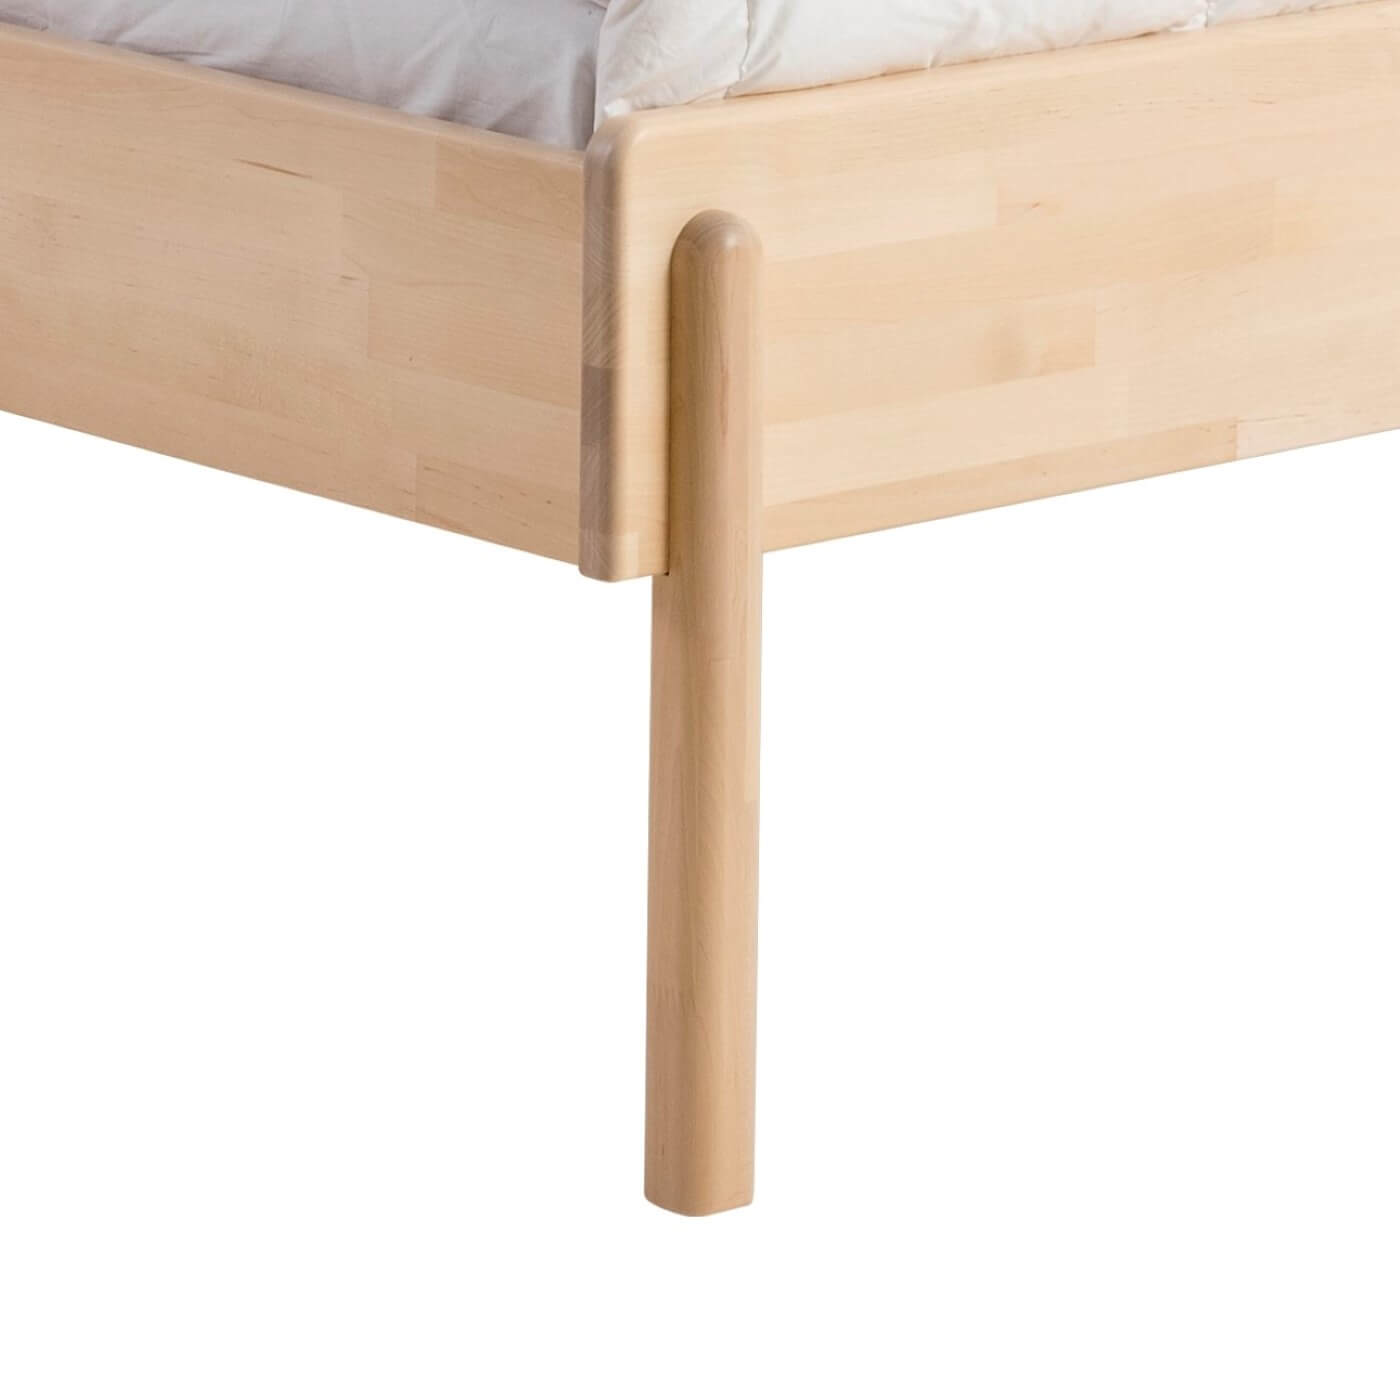 Łóżko design LENNU. Wysoka noga łóżka dwuosobowego 160x200 z drewna brzozy skandynawskiej. Nowoczesny design